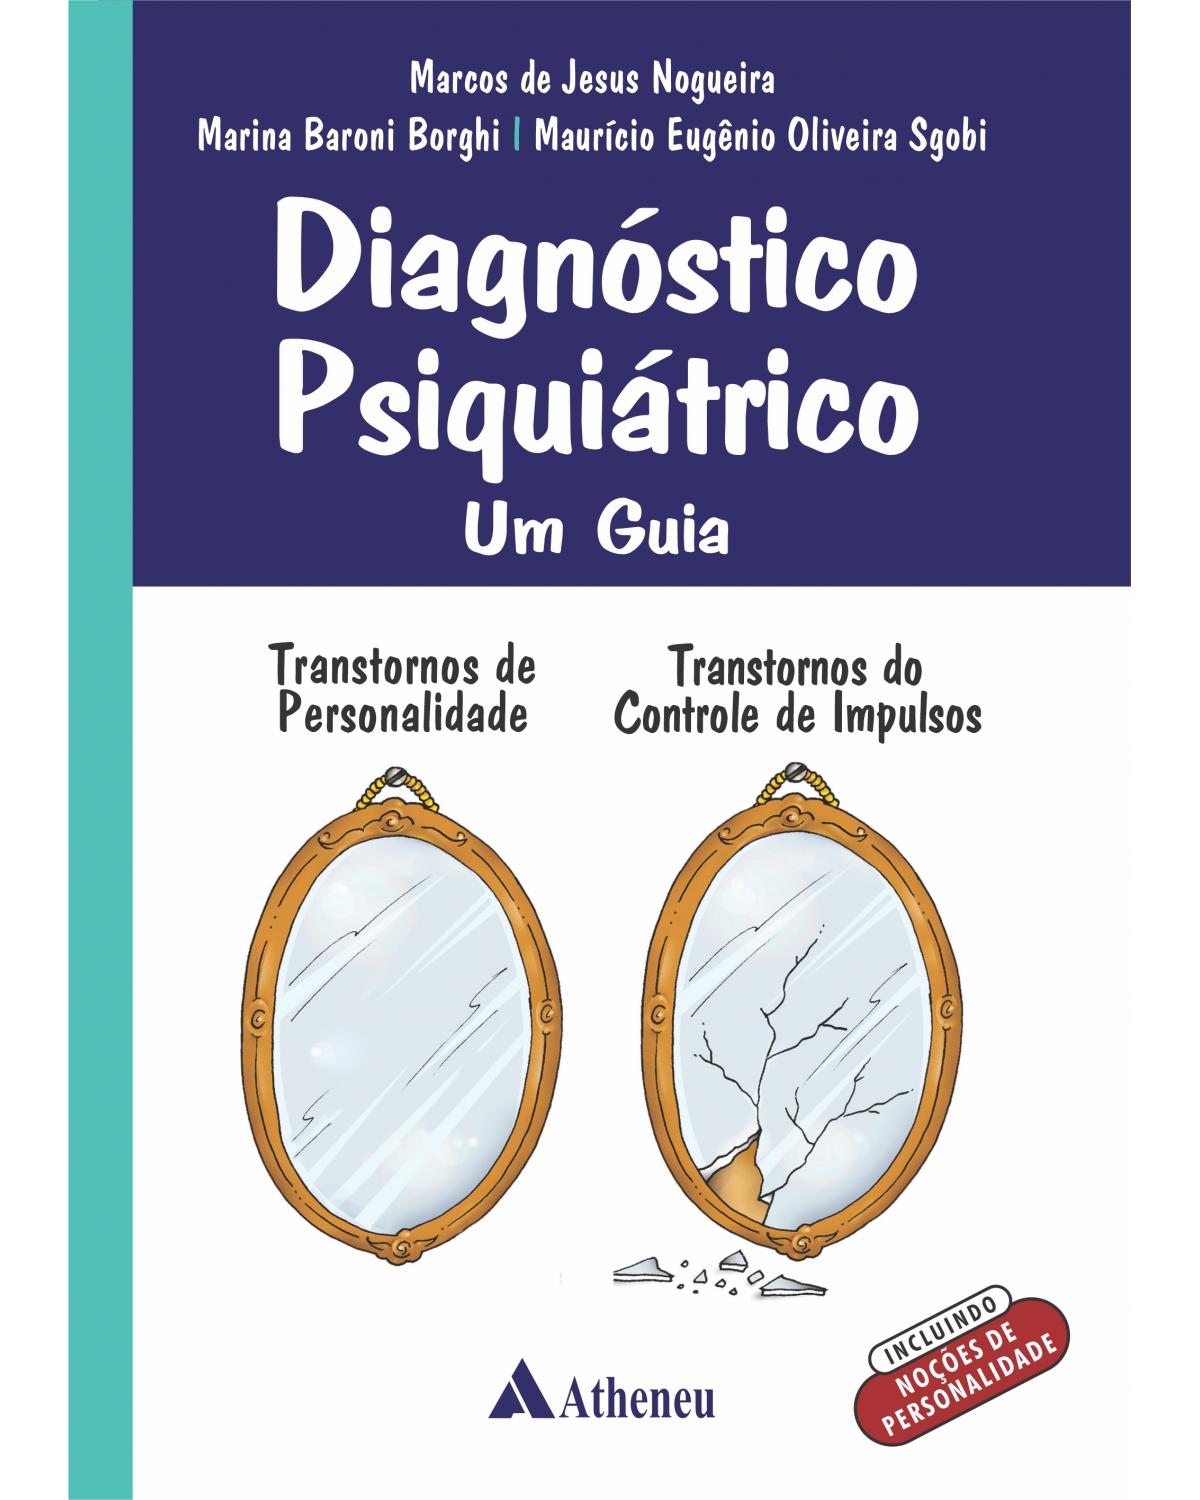 Diagnóstico psiquiátrico - Um guia - transtorno de personalidade, transtorno do controle de impulsos - 1ª Edição | 2020